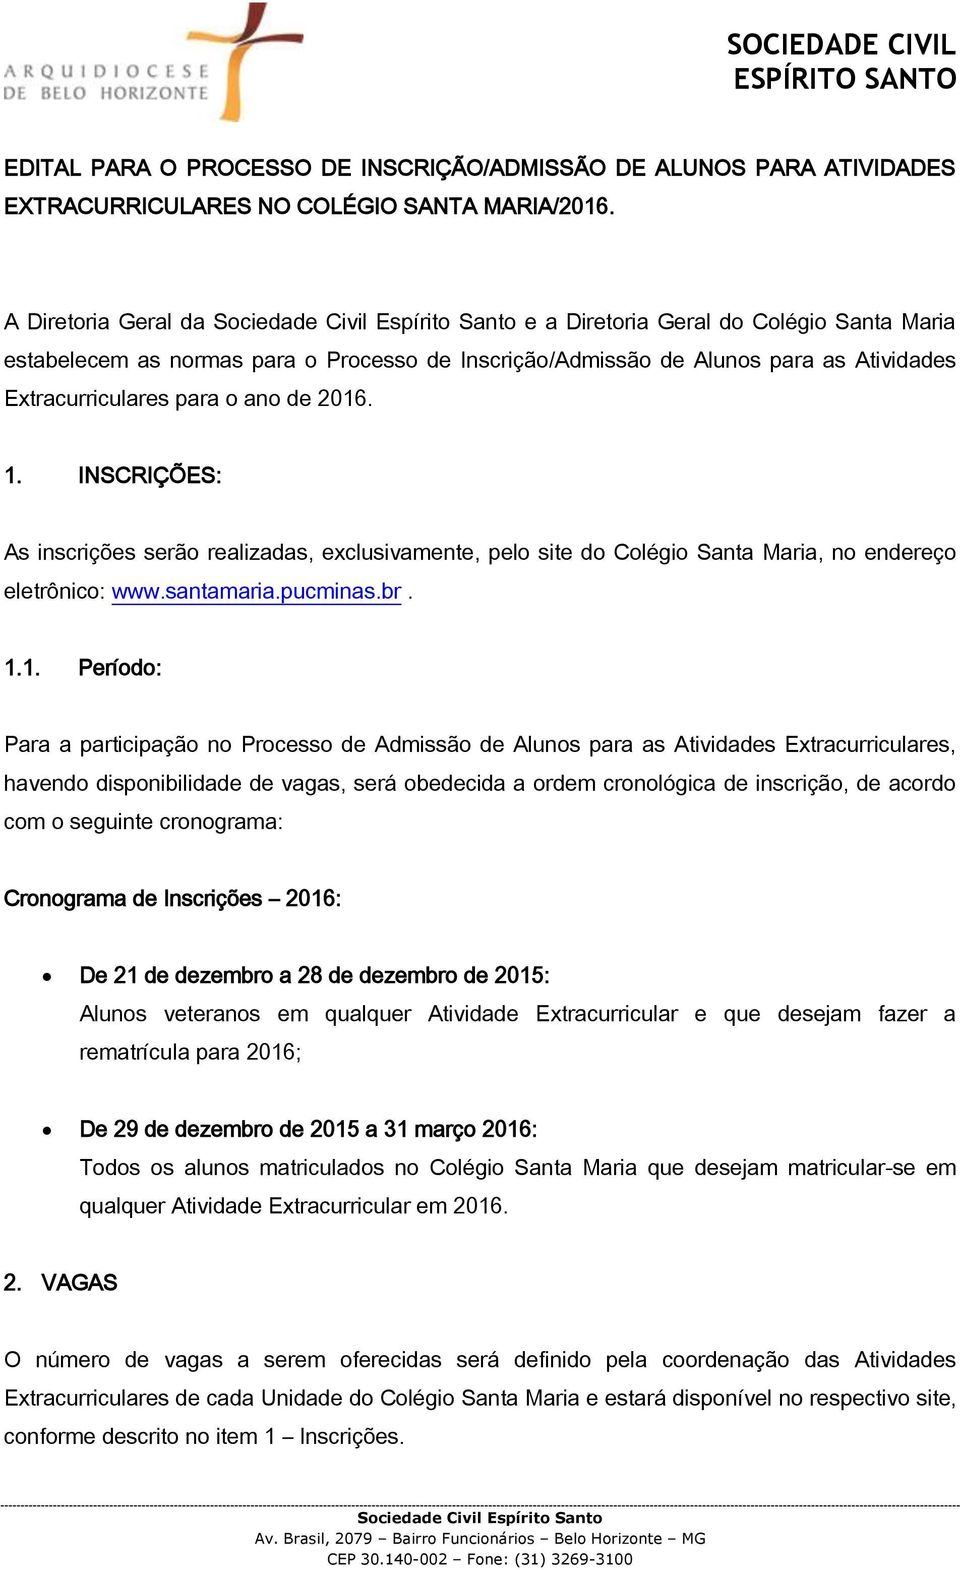 INSCRIÇÕES: As inscrições serão realizadas, exclusivamente, pelo site do Colégio Santa Maria, no endereço eletrônico: www.santamaria.pucminas.br. 1.